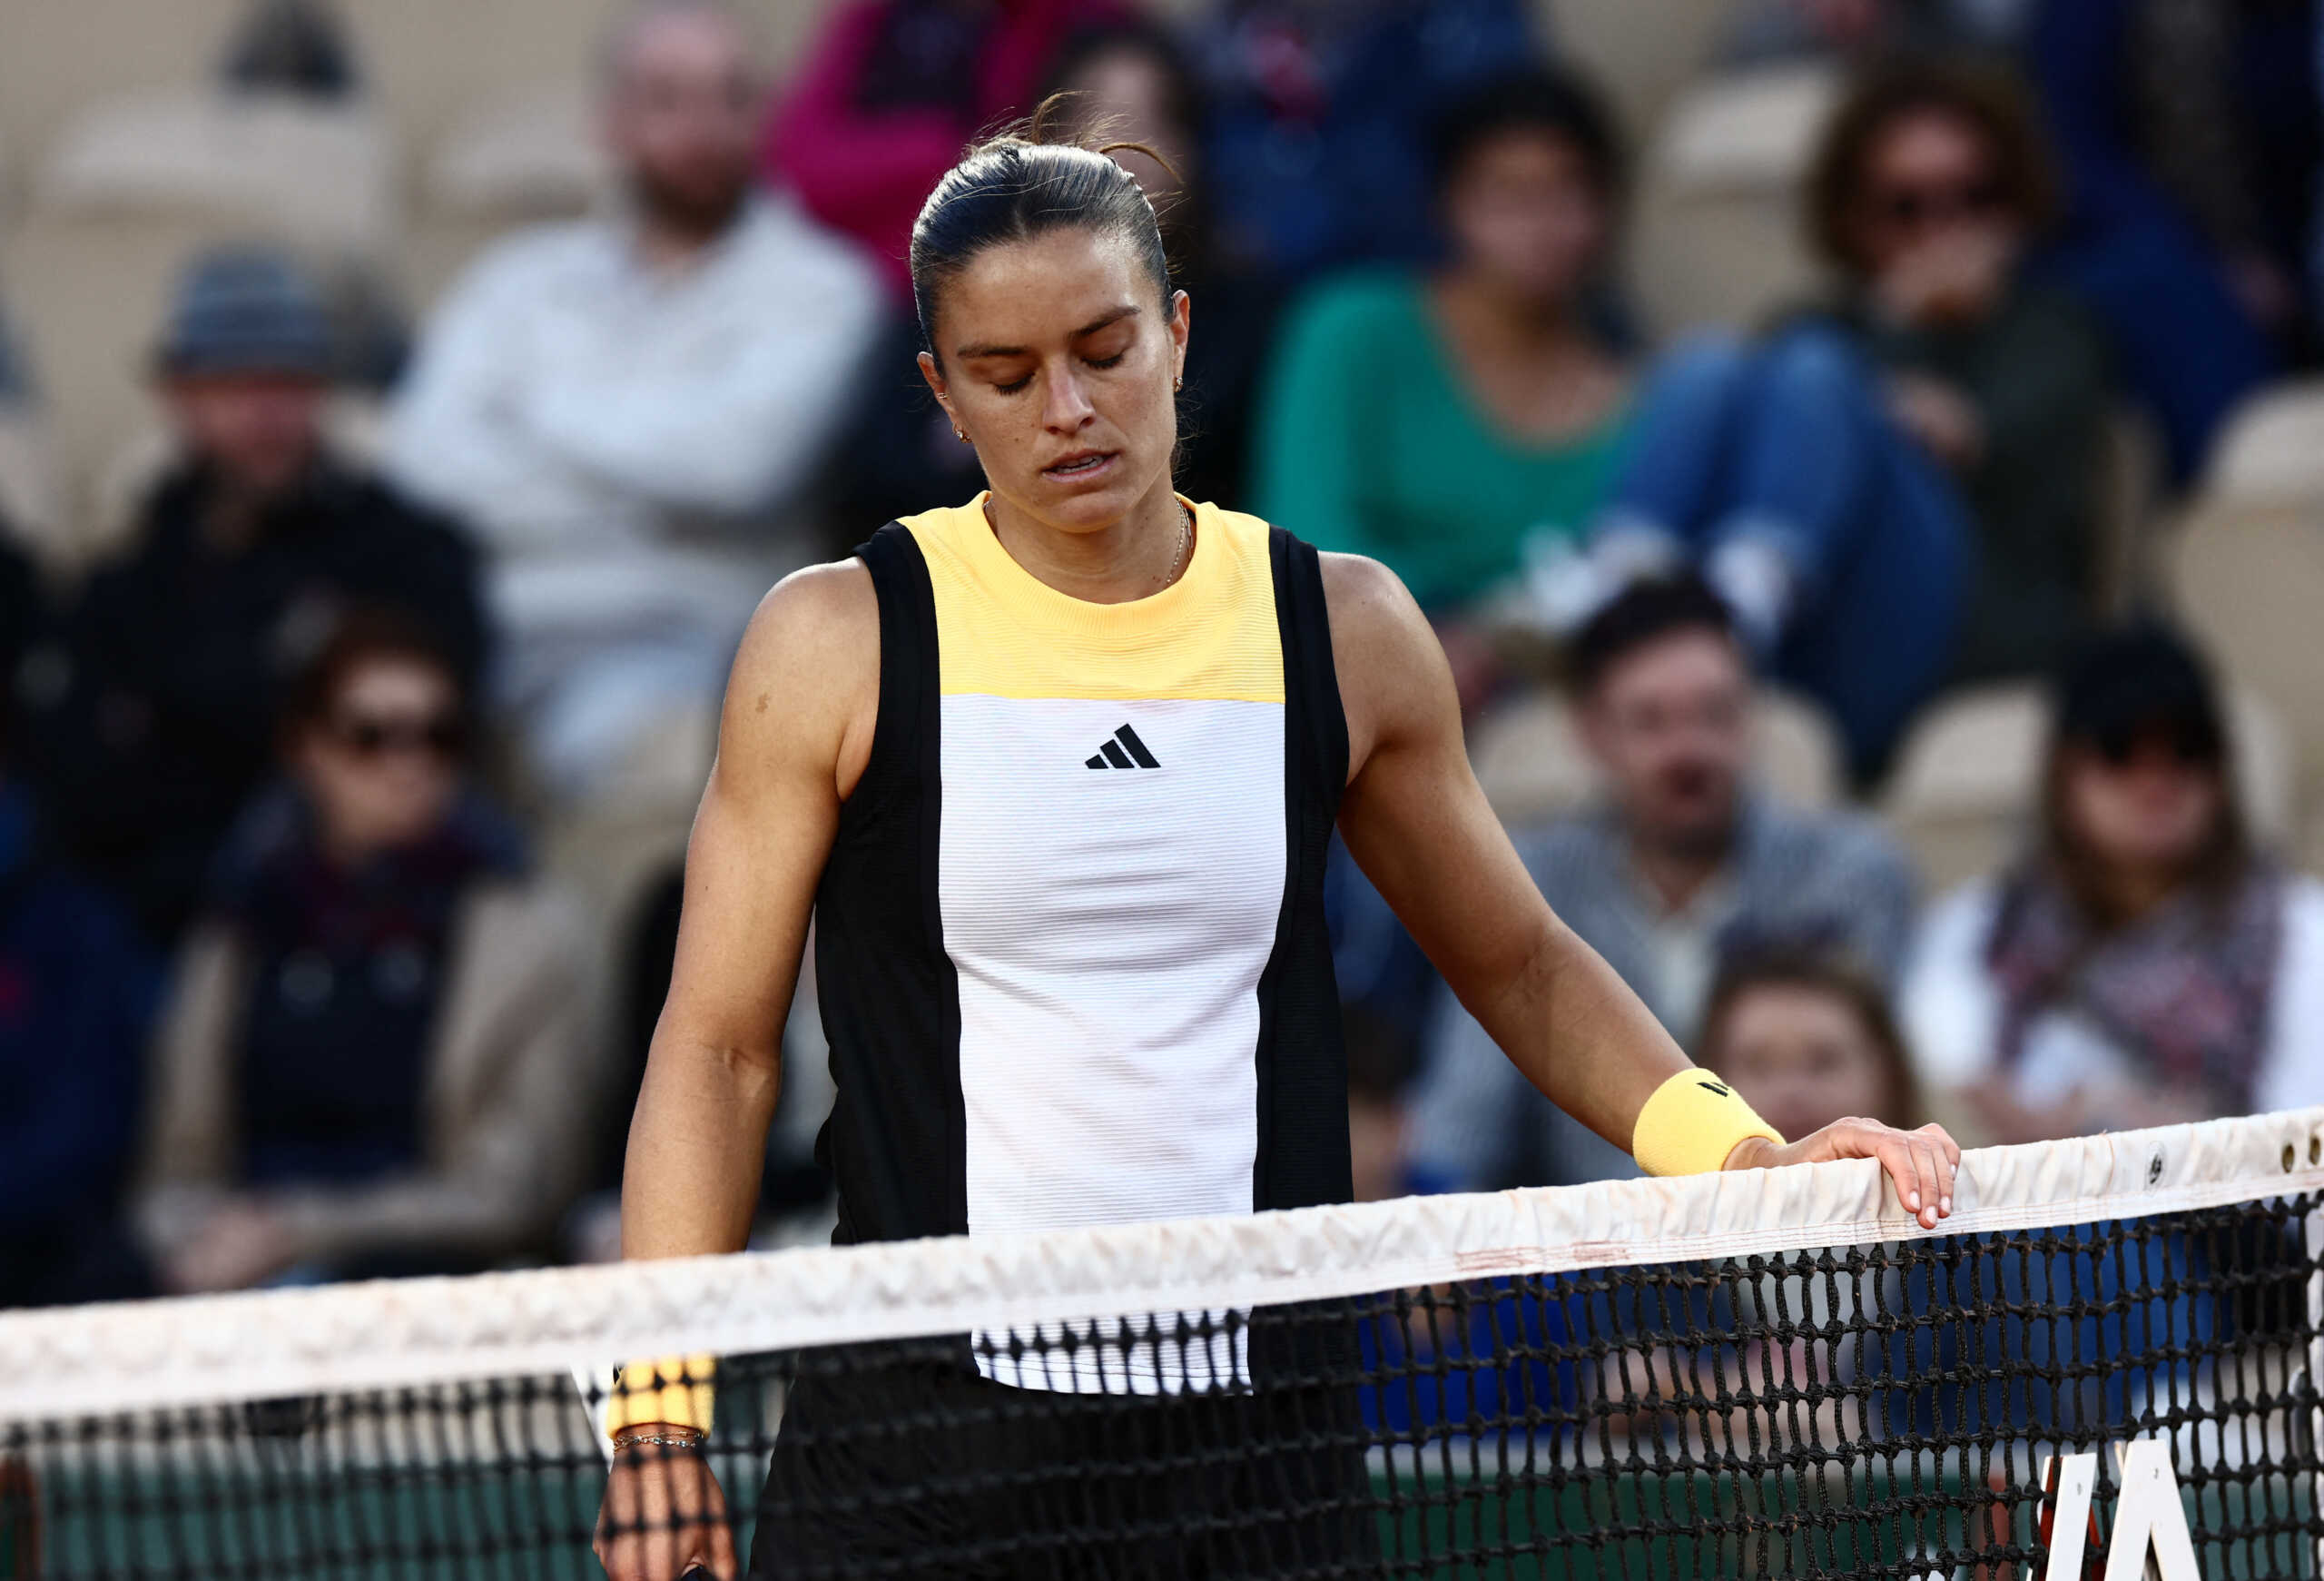 Μαρία Σάκκαρη – Βαρβάρα Γκρατσέβα 1-2: Ήττα με ανατροπή και πρόωρος αποκλεισμός στο Roland Garros